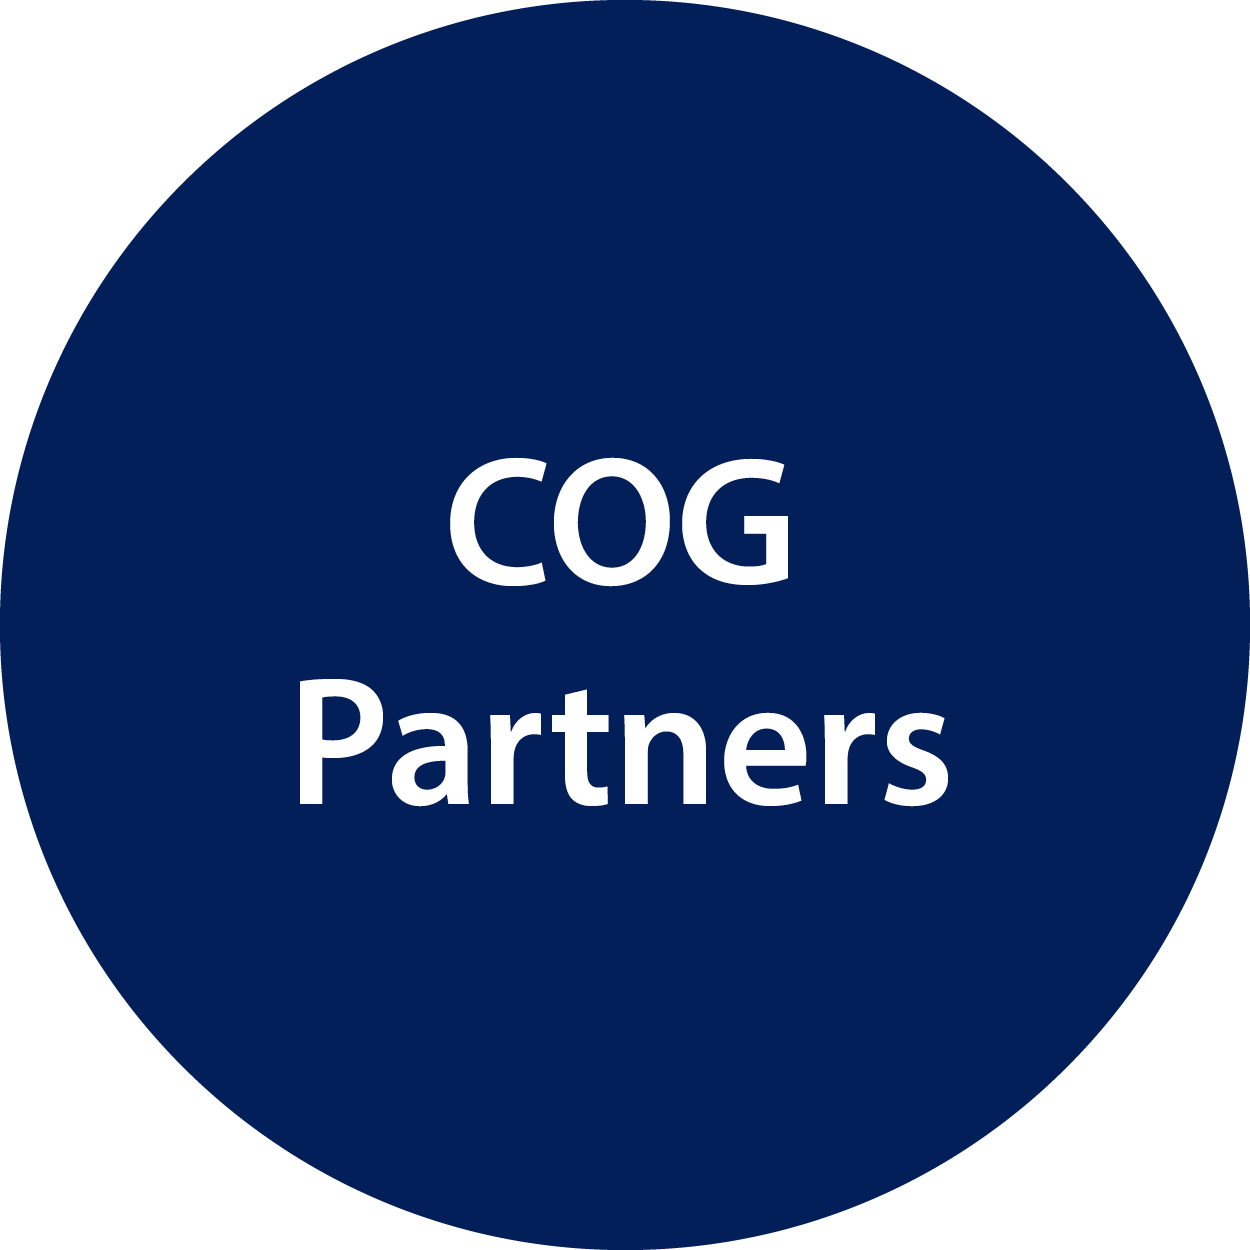 COG Partners